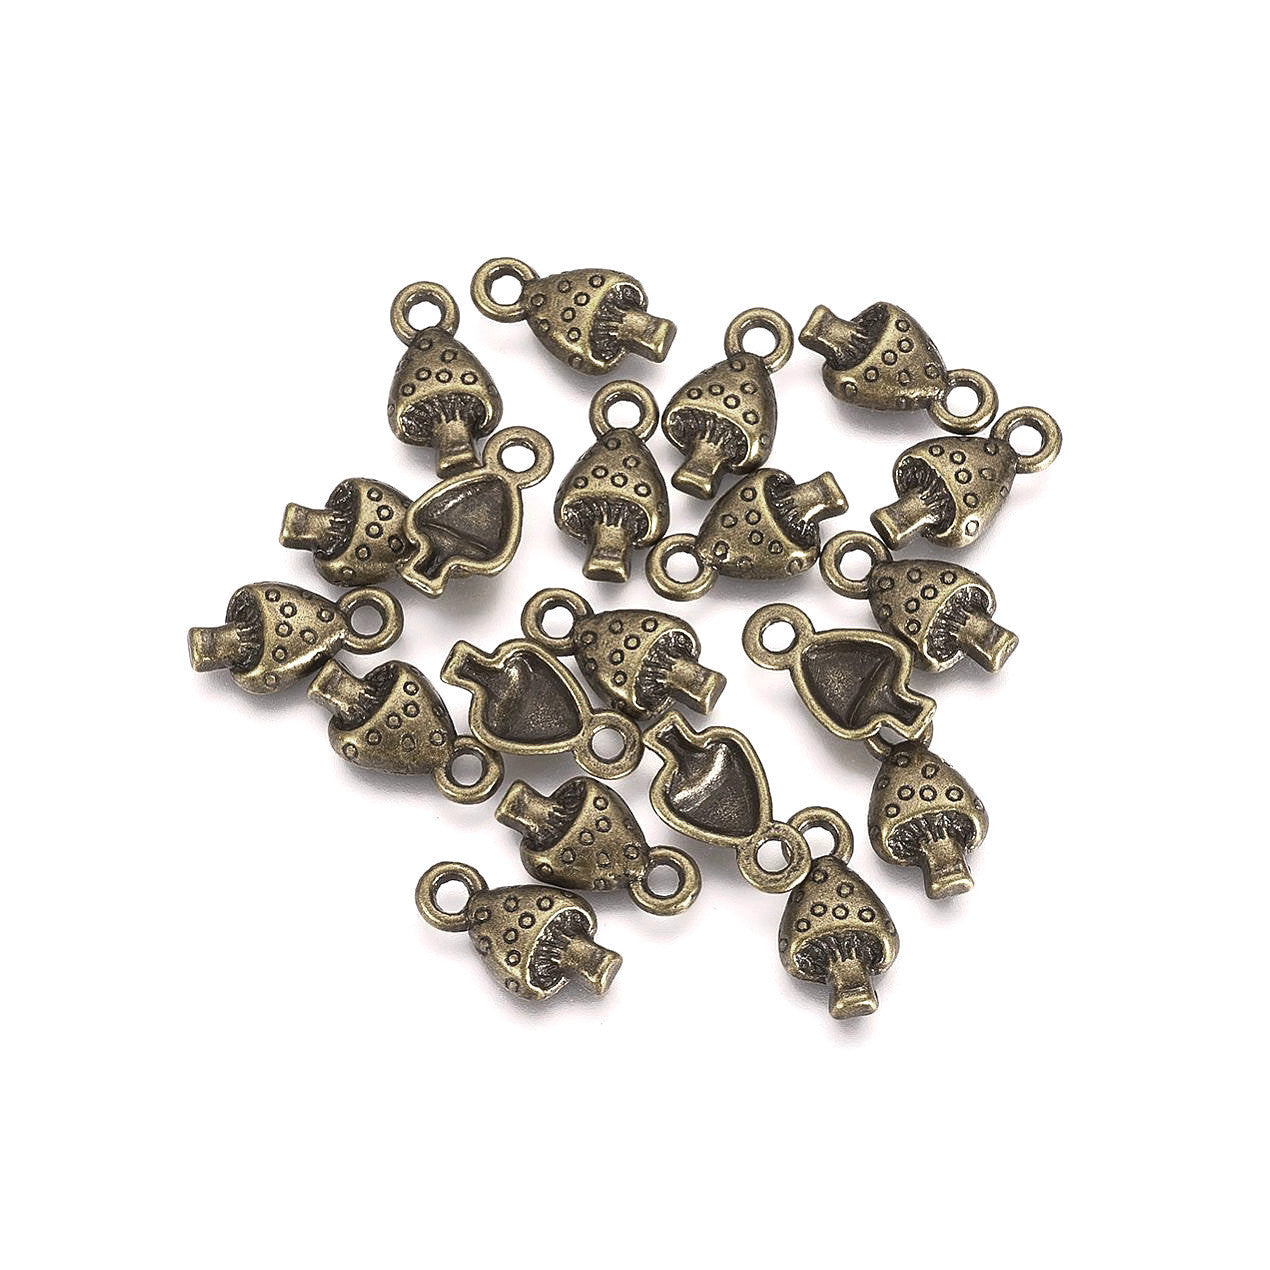 10 tiny mushroom metal pendants 13mm - Nickel free, lead free and cadmium free